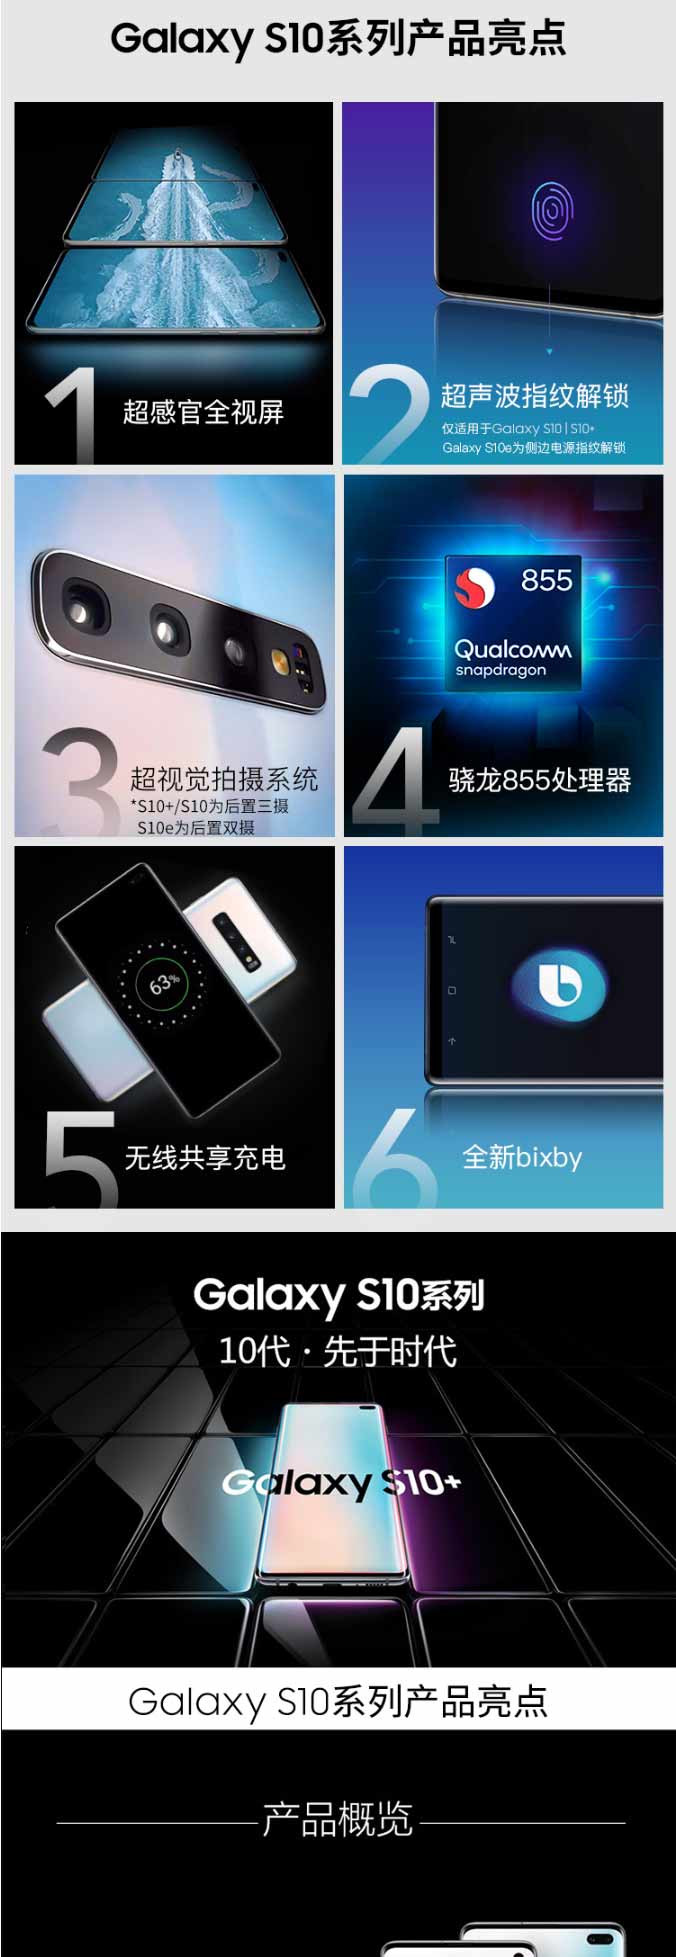 三星 Galaxy S10 超感官全视屏骁龙855双卡双待全网通4G游戏手机8G+128G